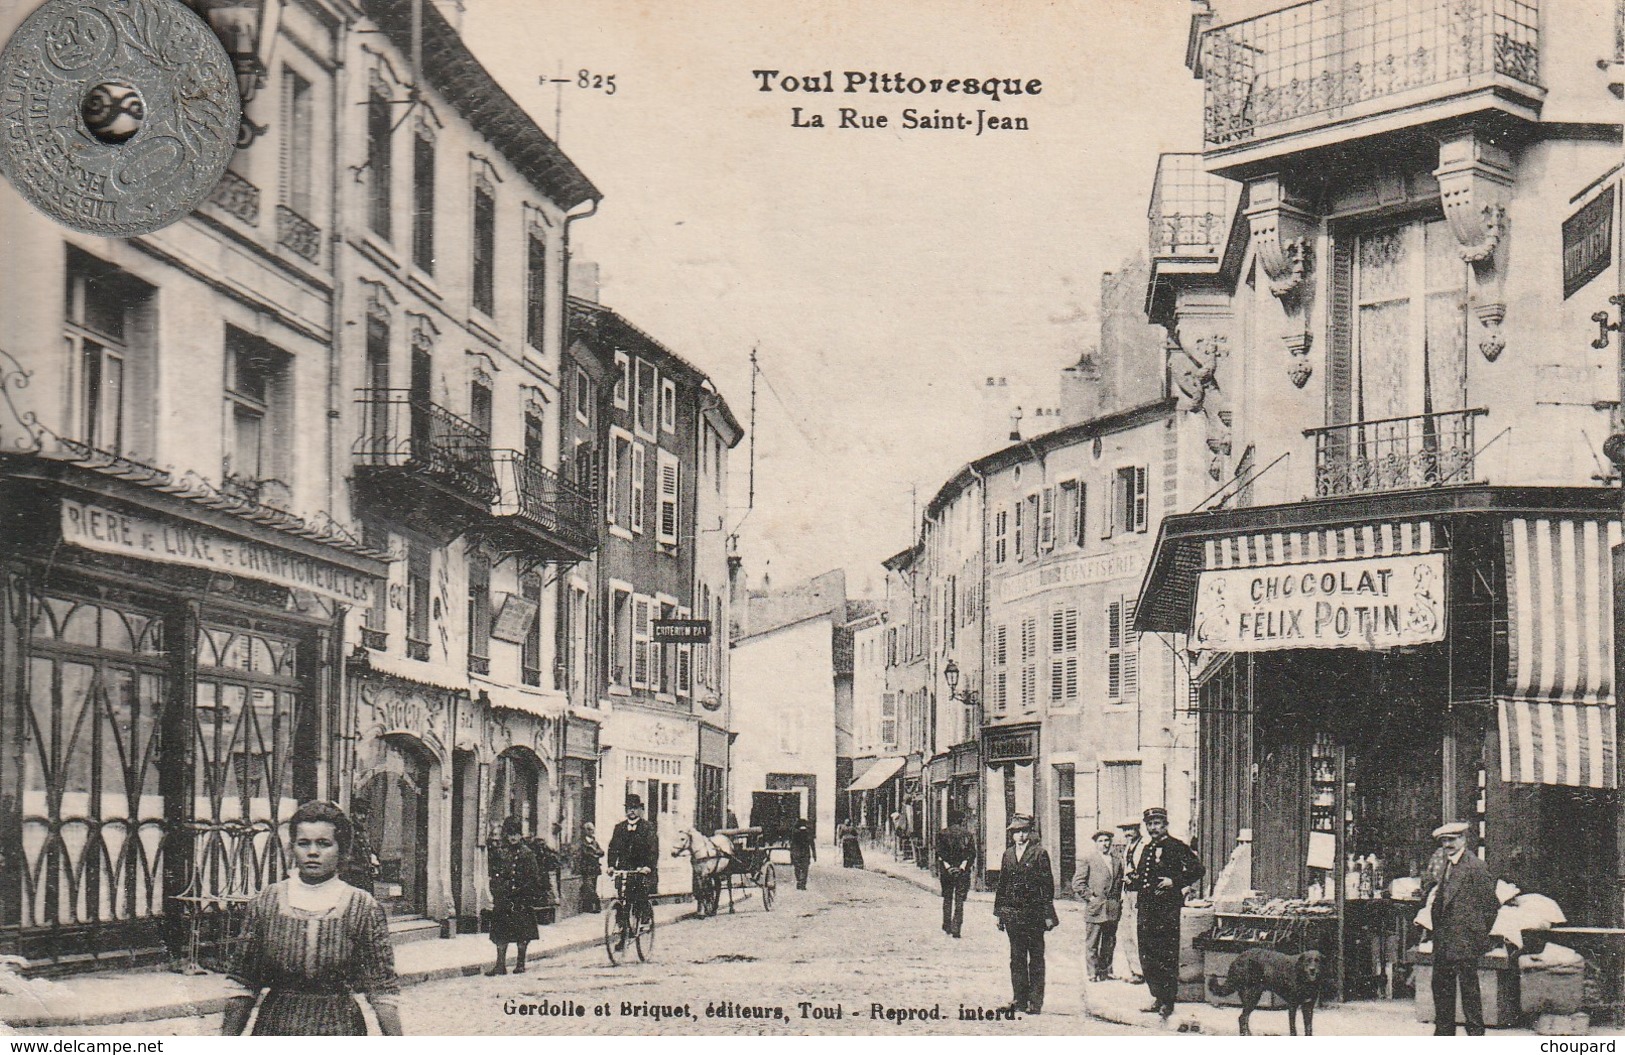 54 - Carte Postale Ancienne De  Toul  Pittoresque  La Rue Saint Jean - Toul